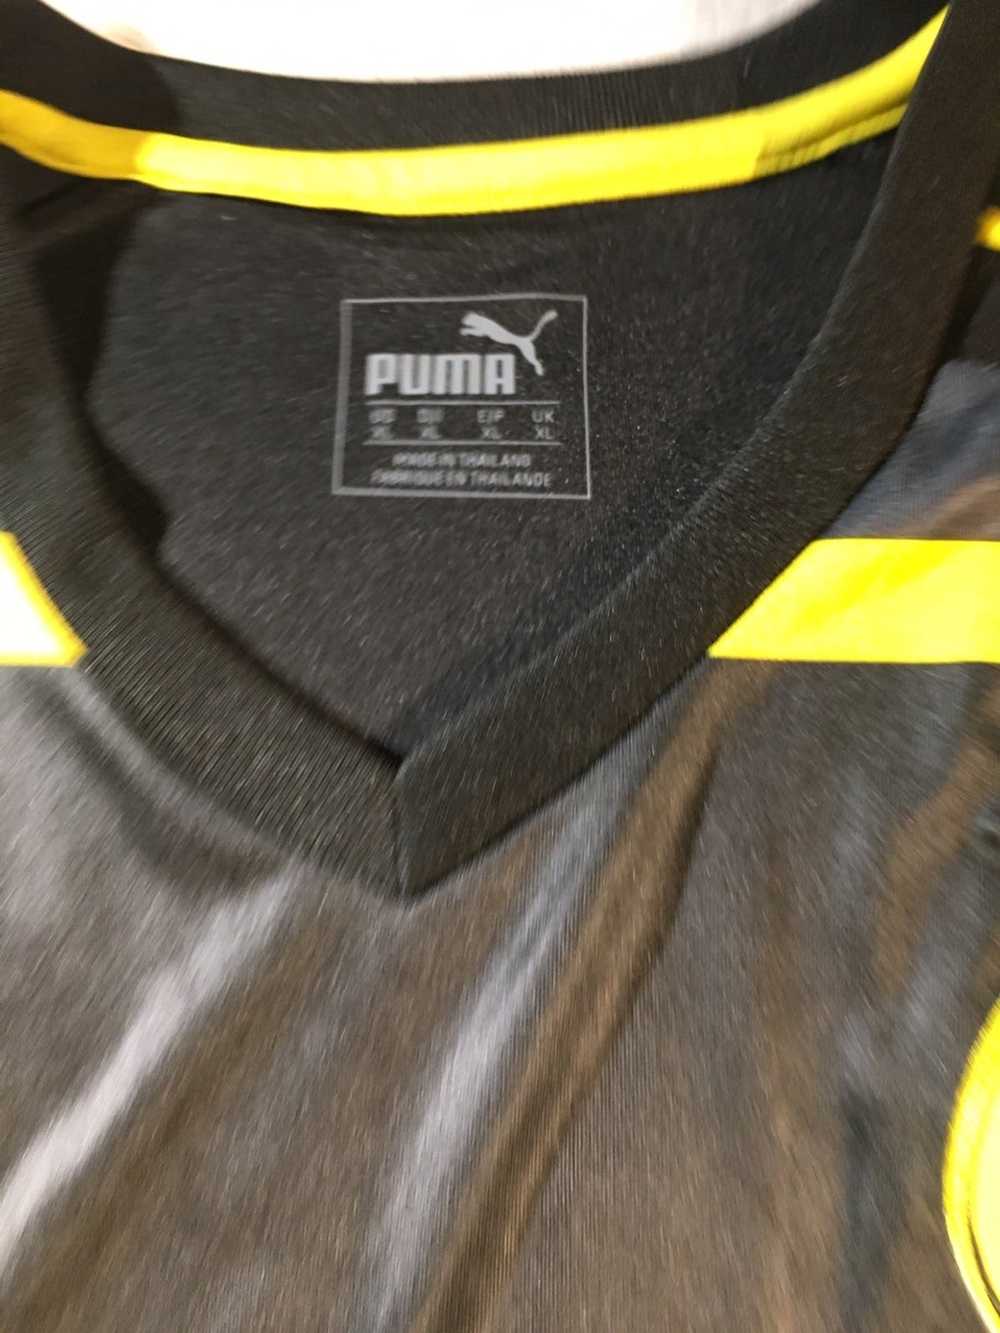 Puma Puma x Evonik x Soccer Jersey - image 3